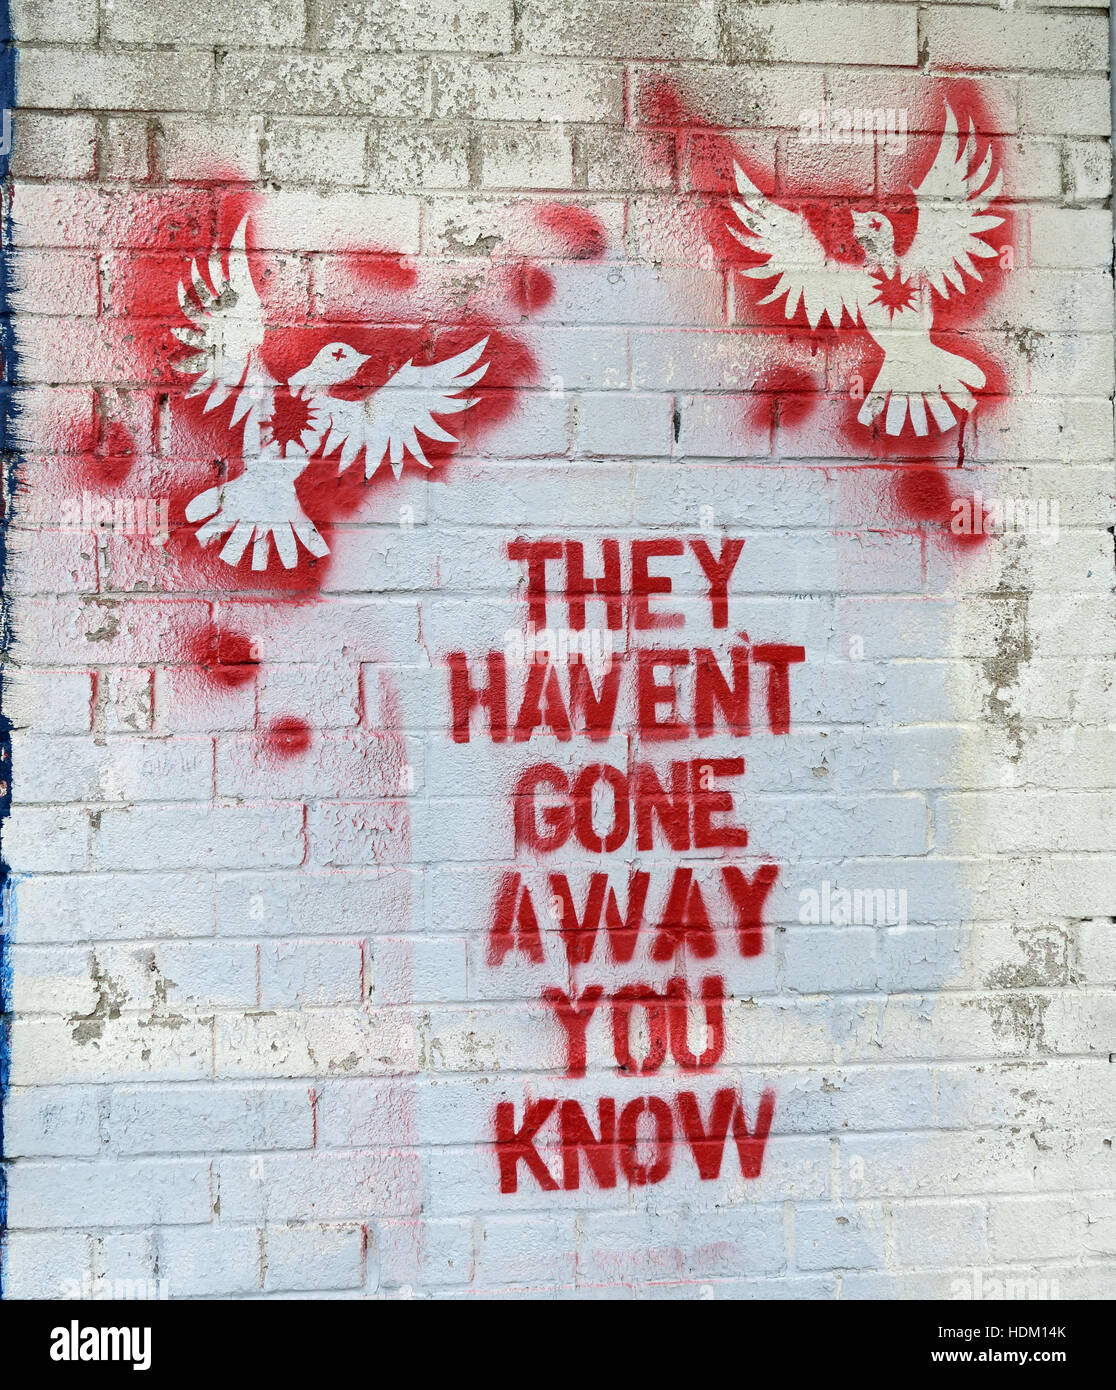 Colombes - ils n'ont pas disparu vous savez - Belfast International Peace Wall,Cupar way,l'Ouest de Belfast,NI,UK (Gerry Adams quote) Banque D'Images